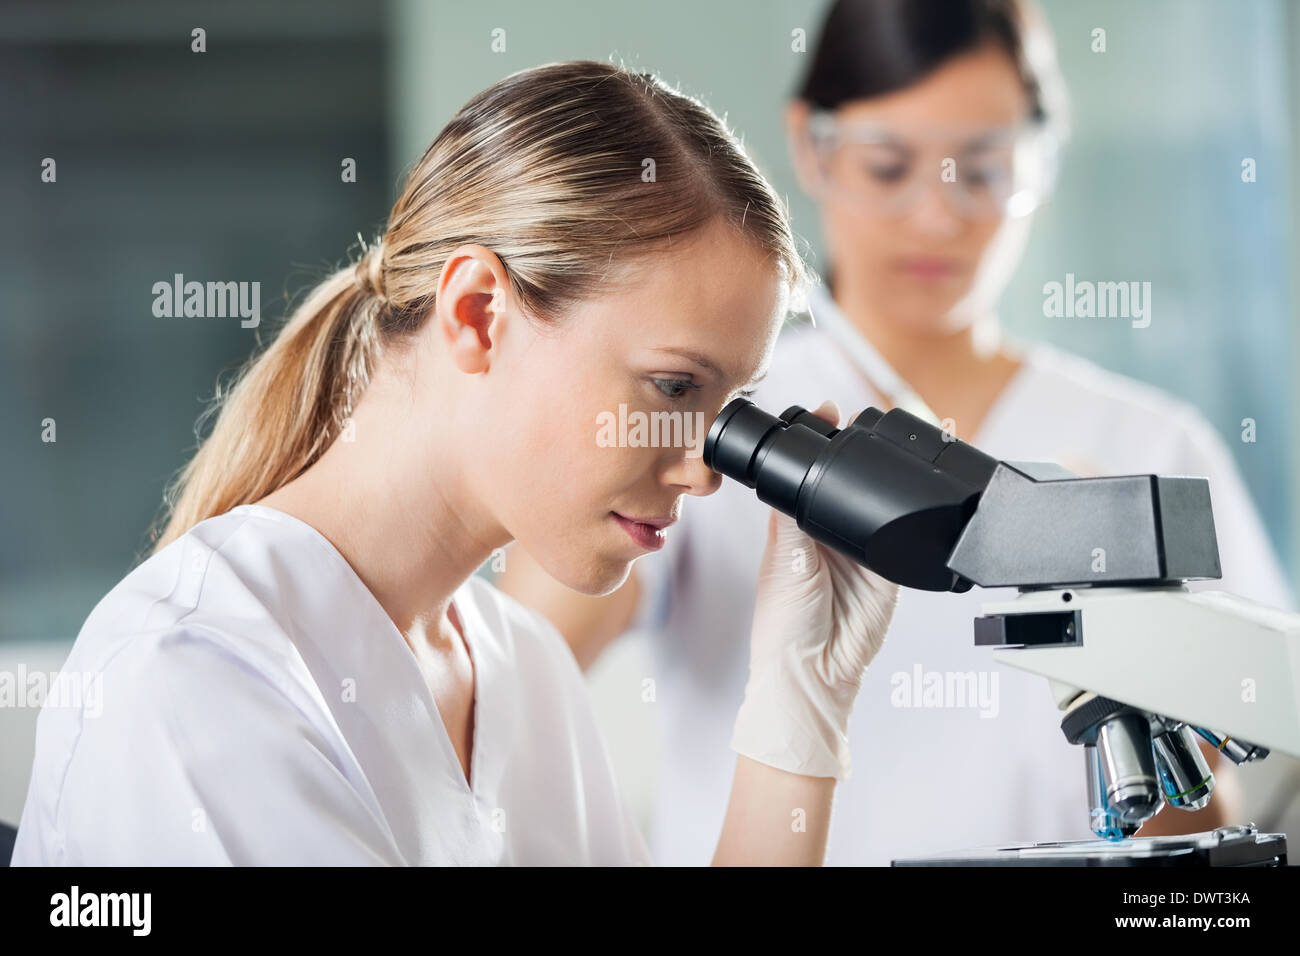 Technicien à la microscope en femelle Banque D'Images